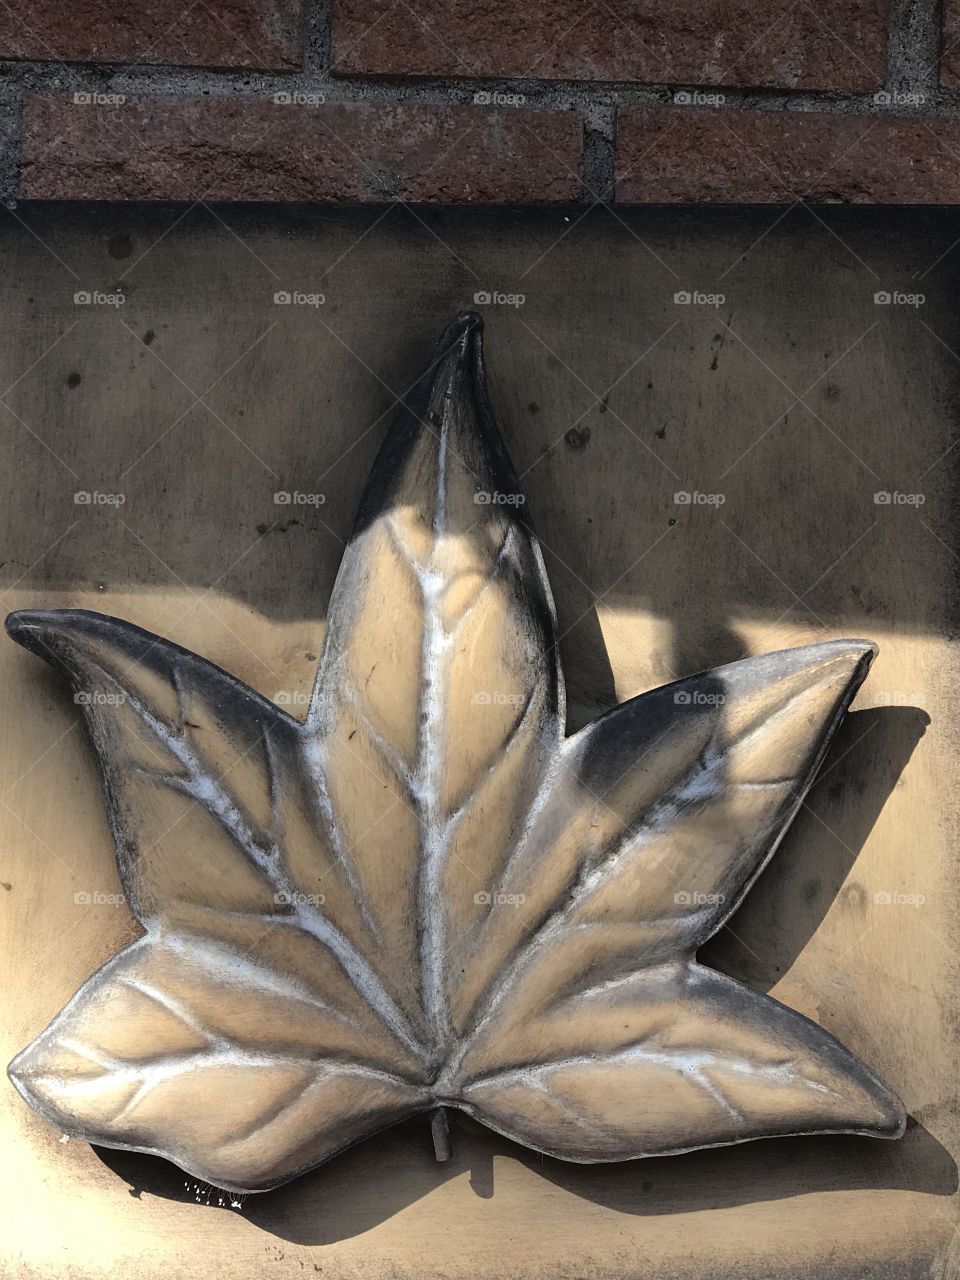 Leaf in metal